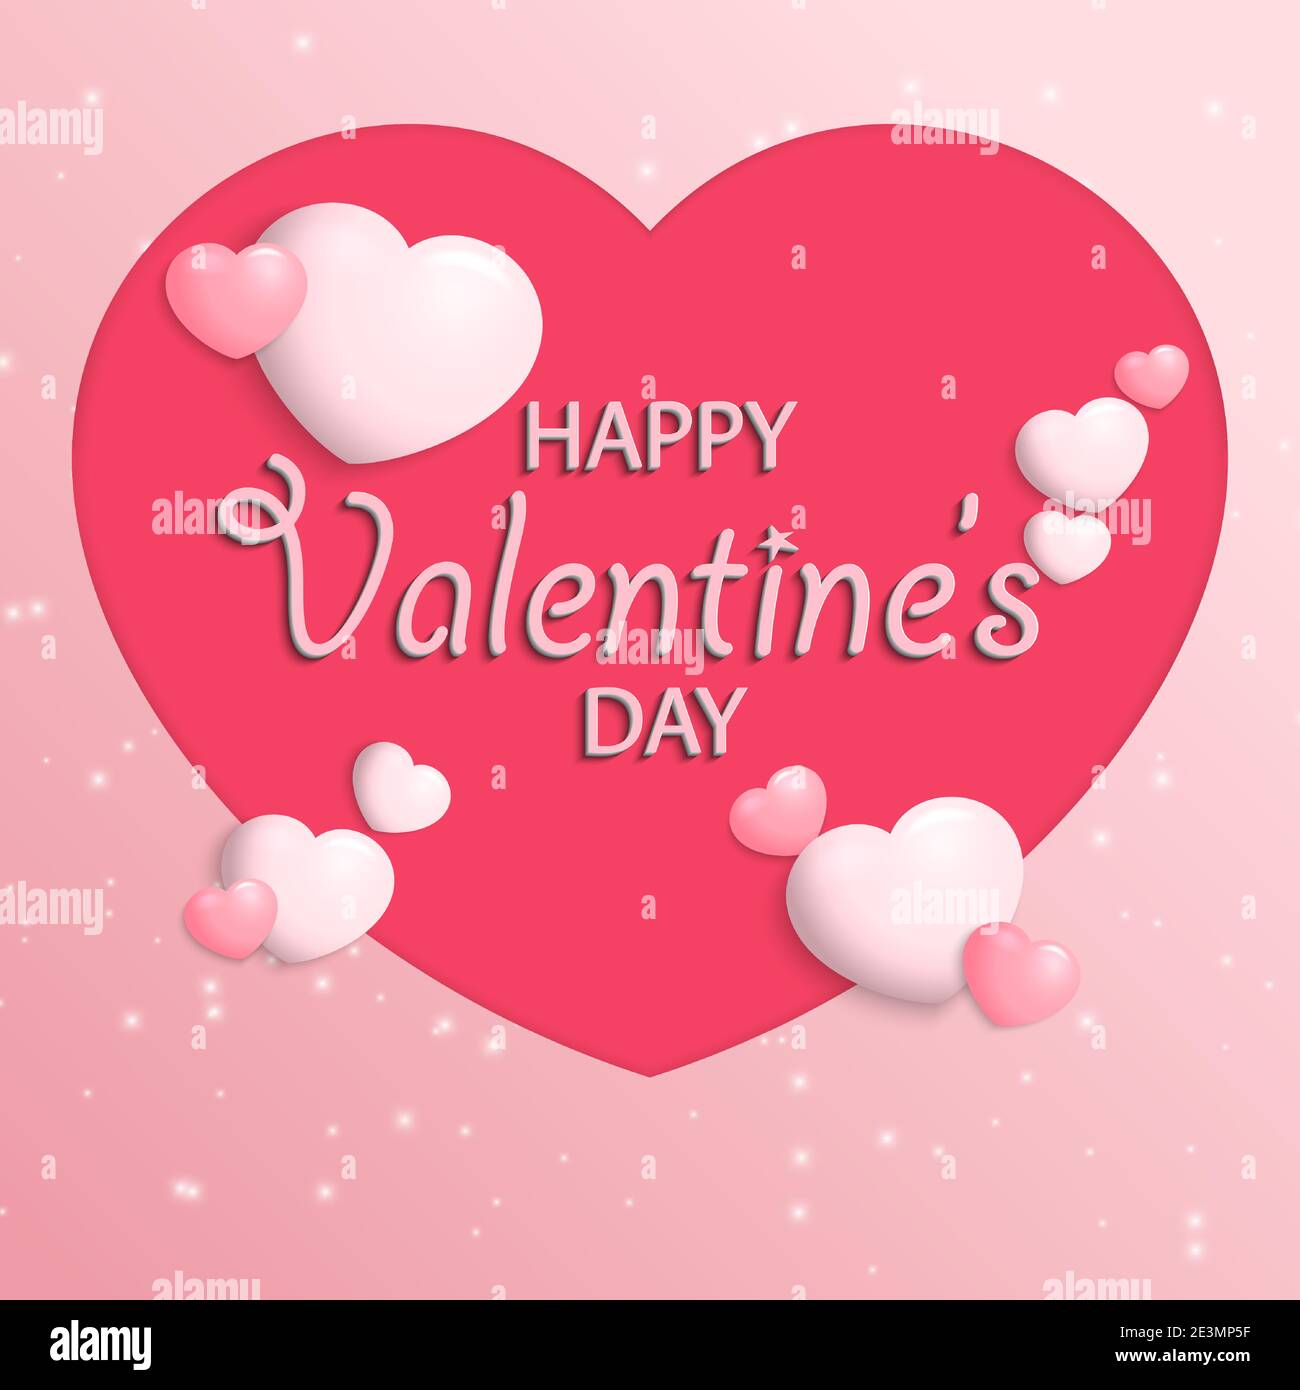 Happy Valentines Day.Grußkarte Hintergrund mit 3d-Text-Effekt.Papierkunst Stil.Vektorgrafik.EPS10 Stock Vektor